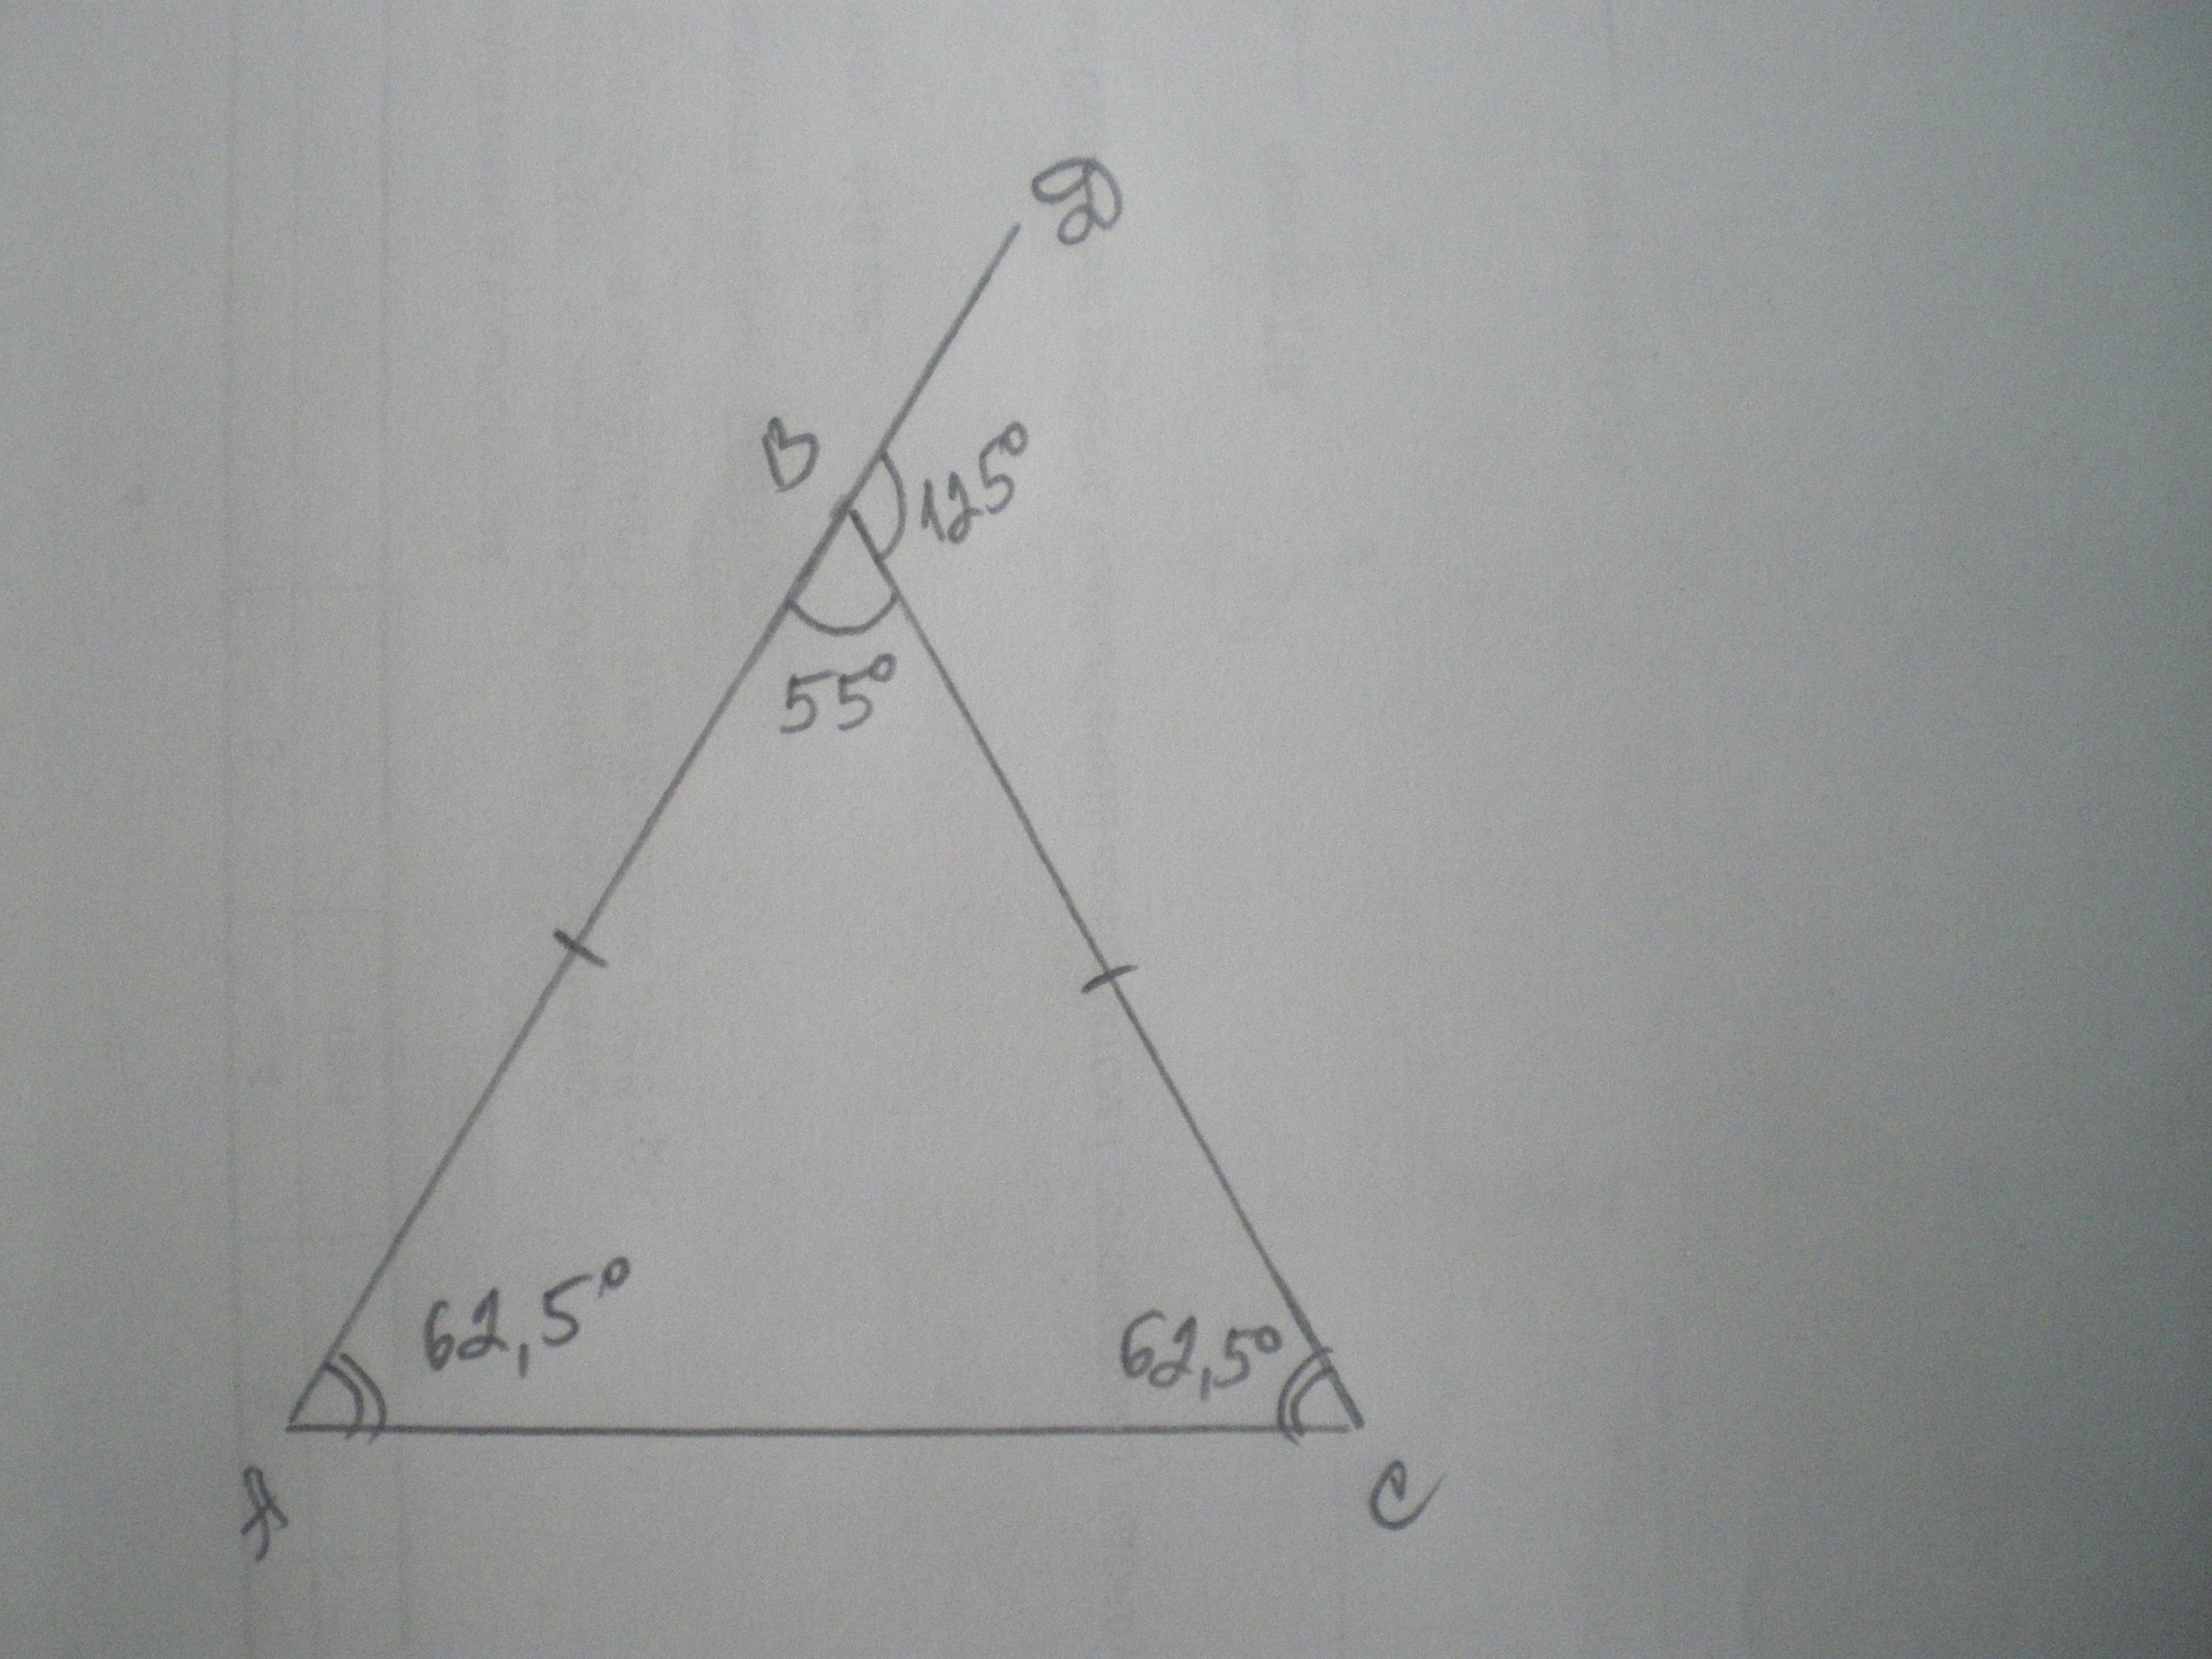 В треугольнике авс угол б 55. Внешний угол при вершине b равен 125°. В треугольнике ABC угол c равен 125 Найдите внешний. Внешний угол приивершине. Внешний угол при вершине b треугольника ABC.